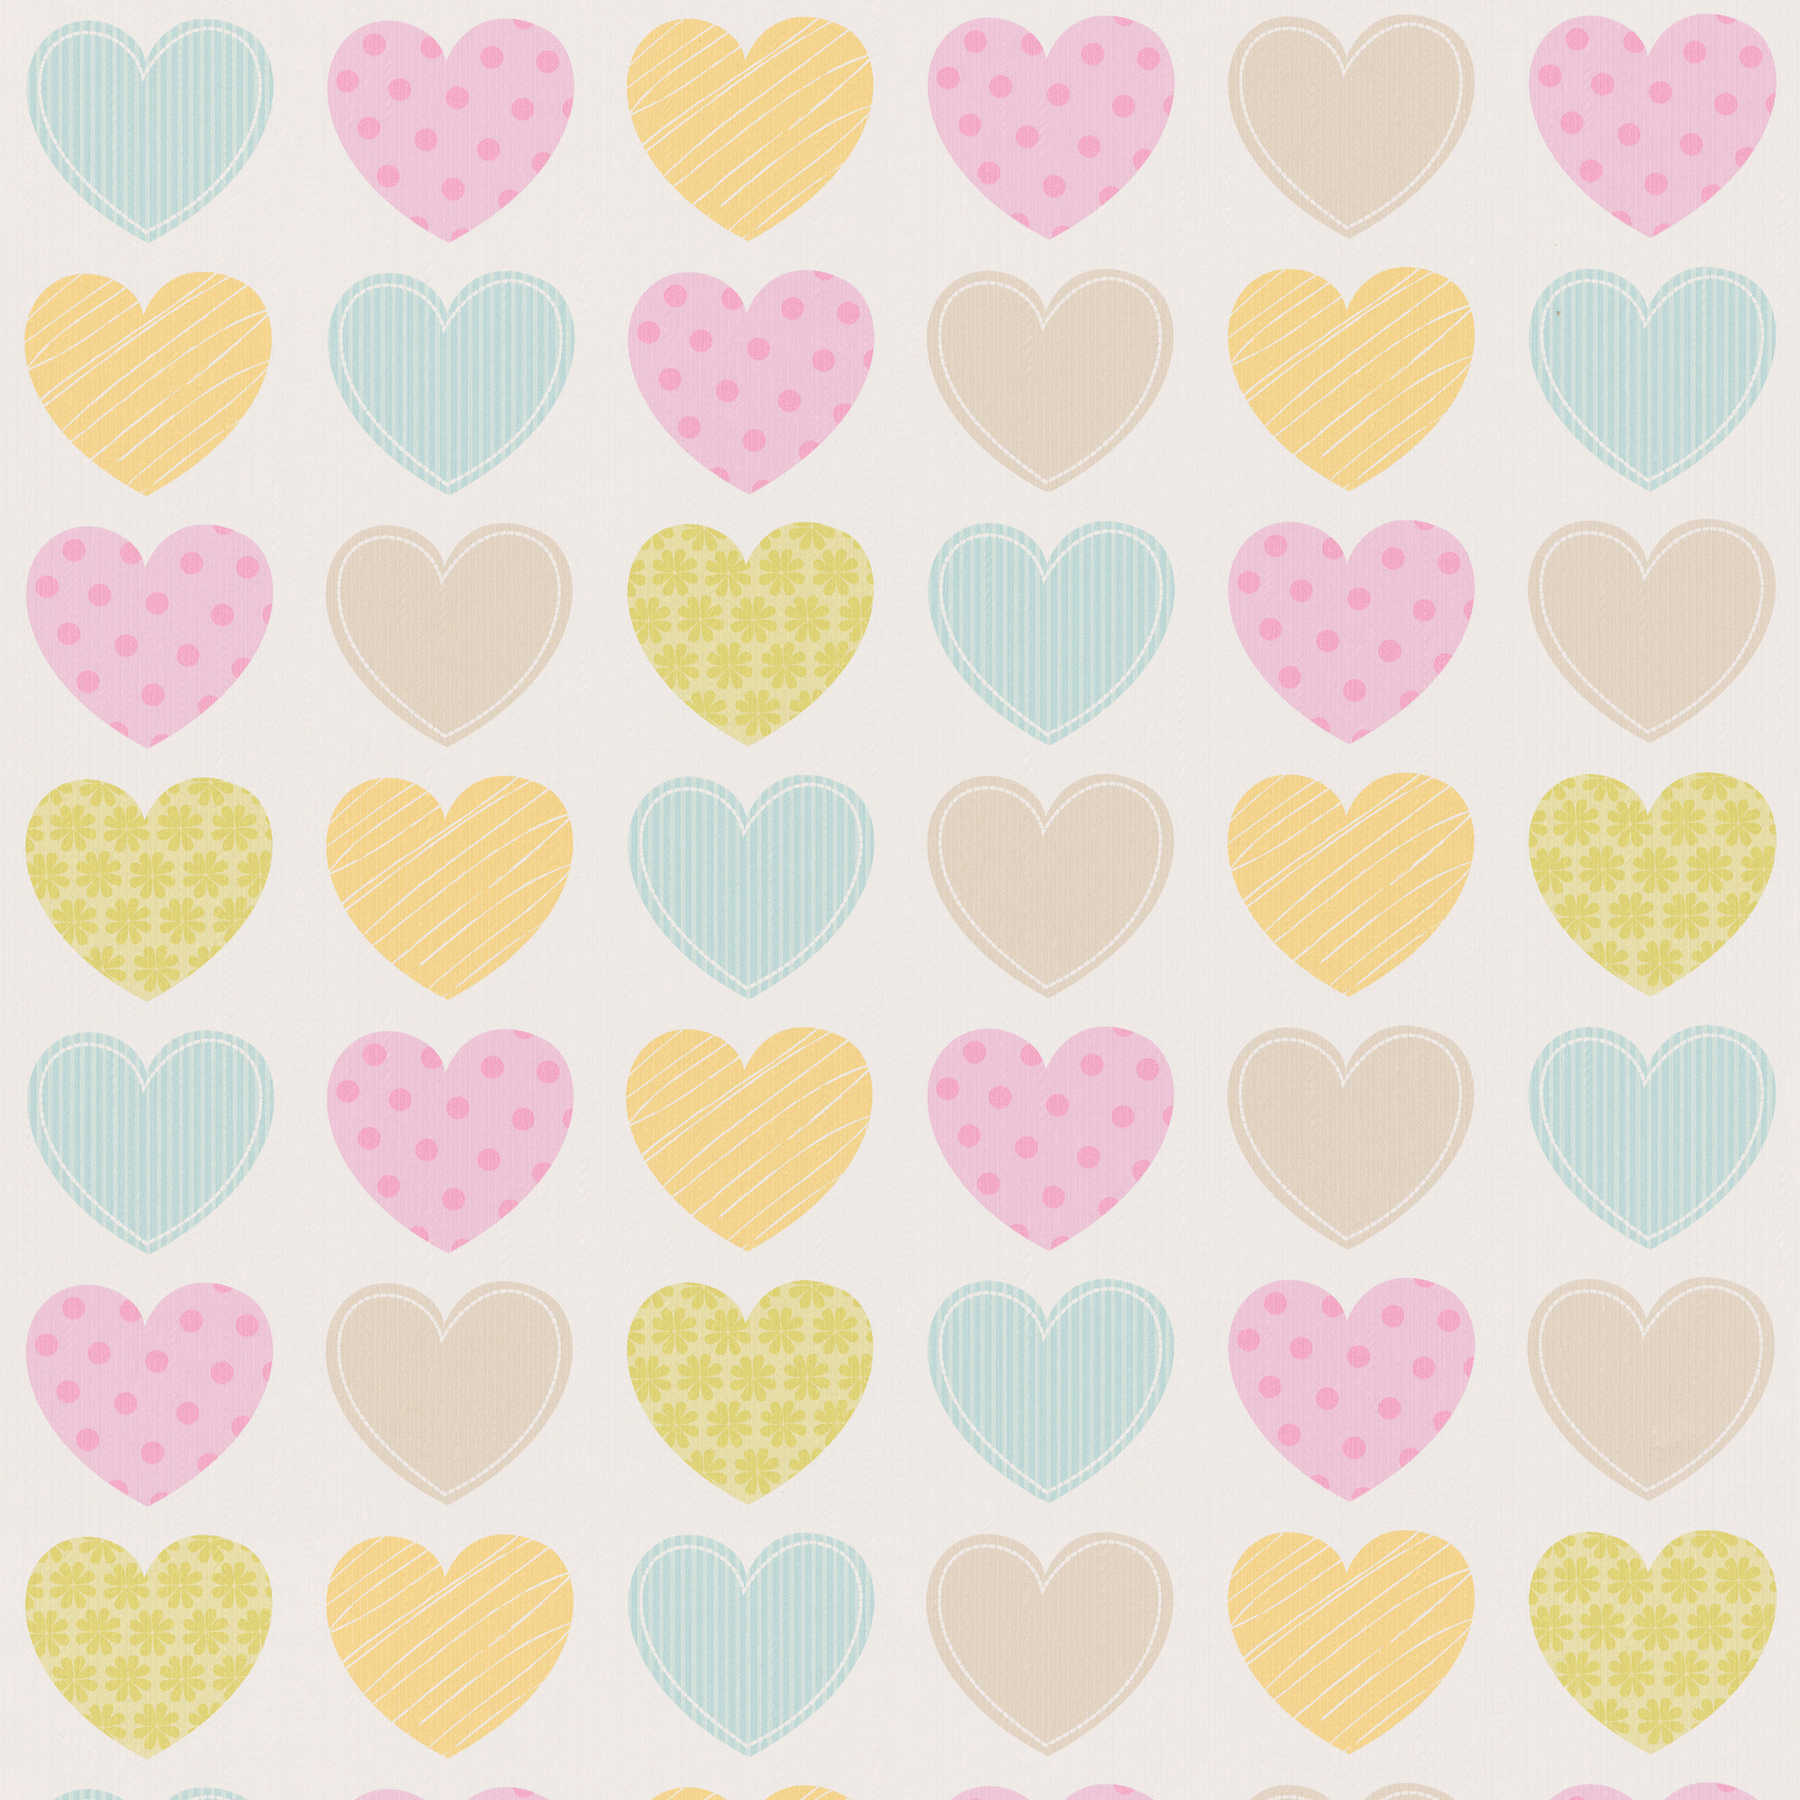         Pastell-Tapete mit Herzen für Kinderzimmer – Bunt, Weiß
    